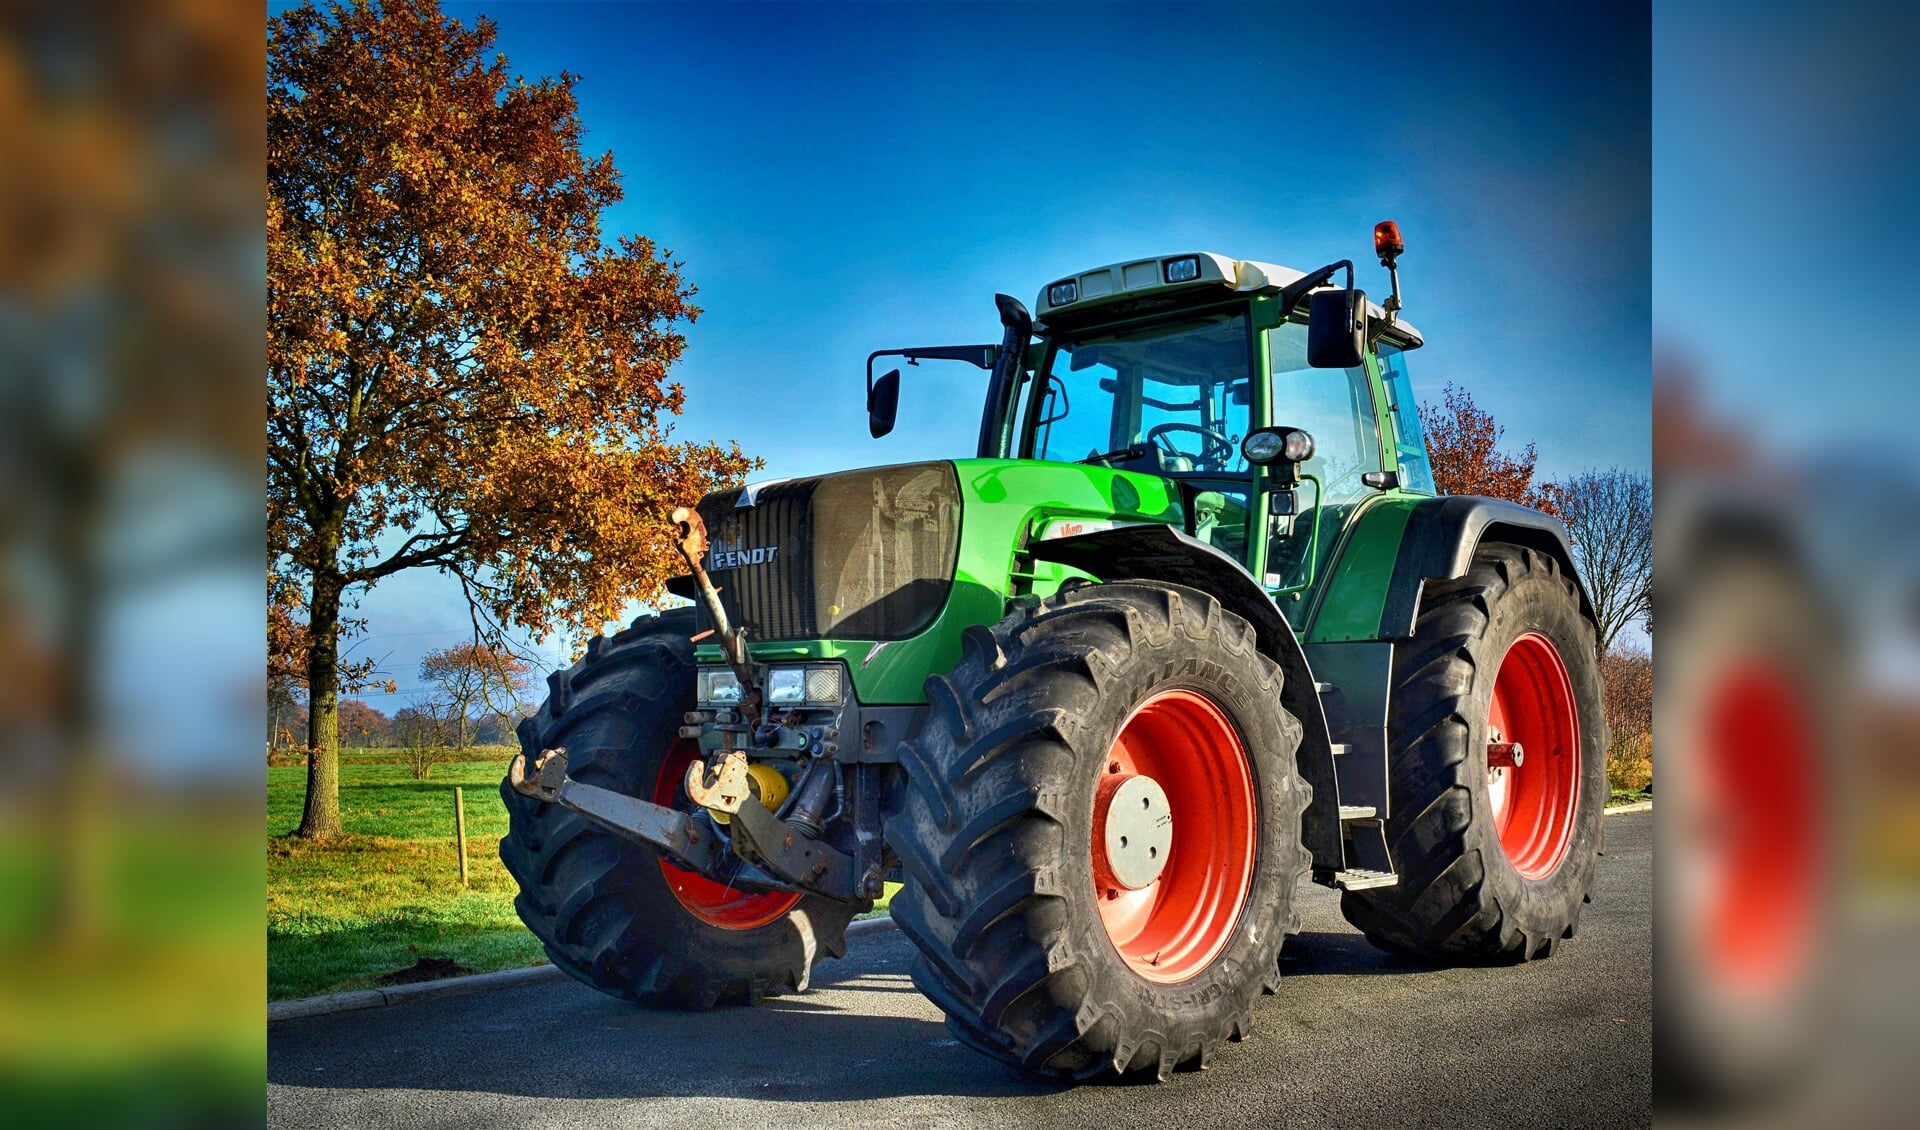 Tractor op de weg. Foto: Pixabay